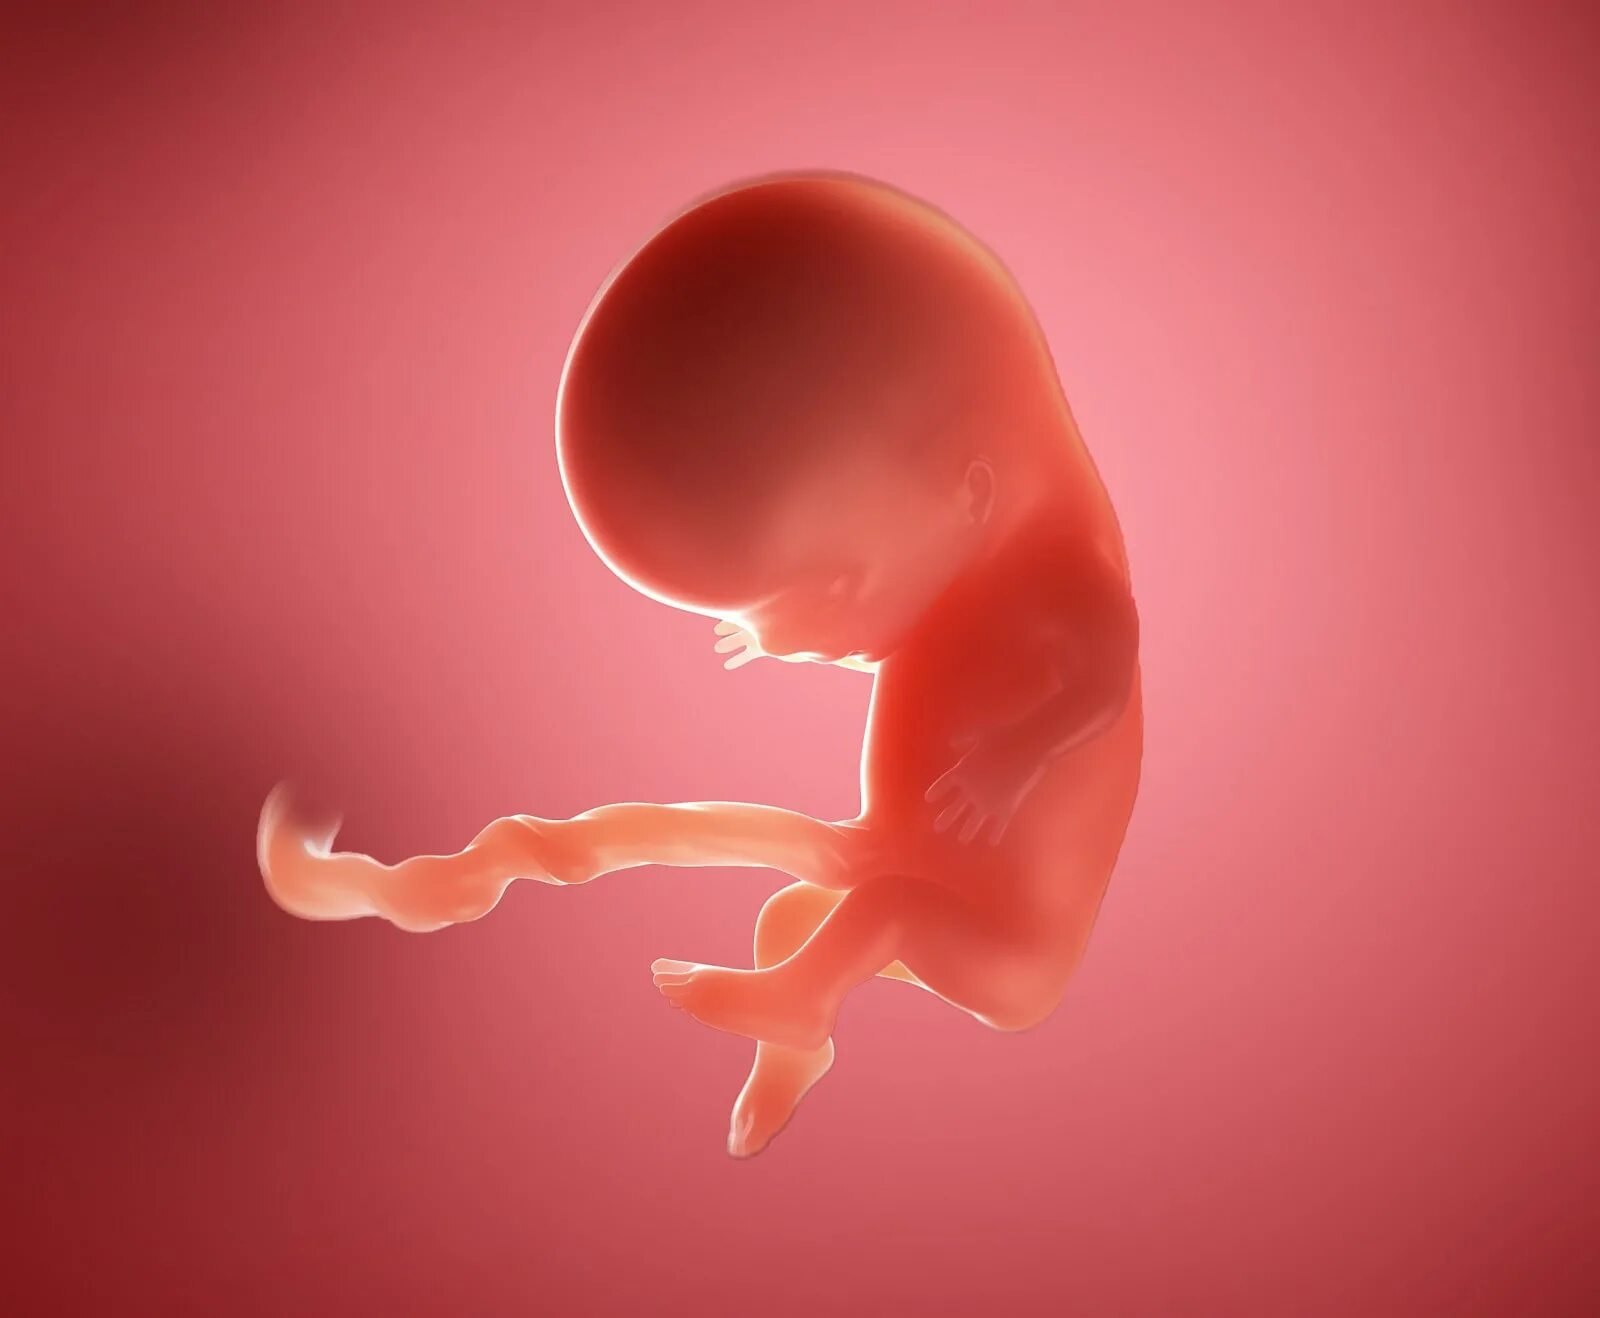 Зародыш 10 недель беременности. Плод человека 10 недель. Эмбрион на 10 неделе беременности.